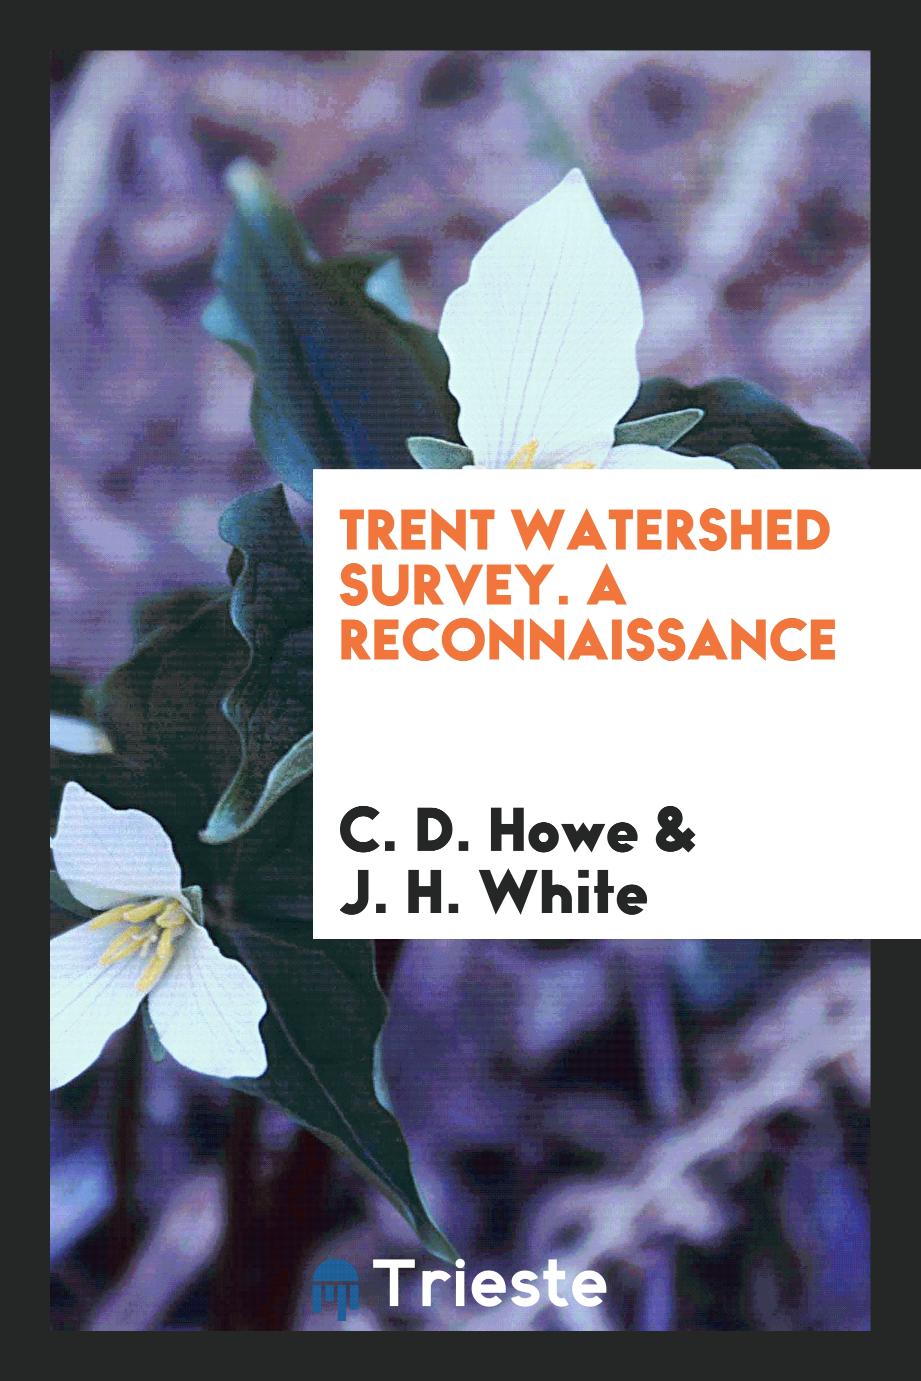 Trent watershed survey. A reconnaissance